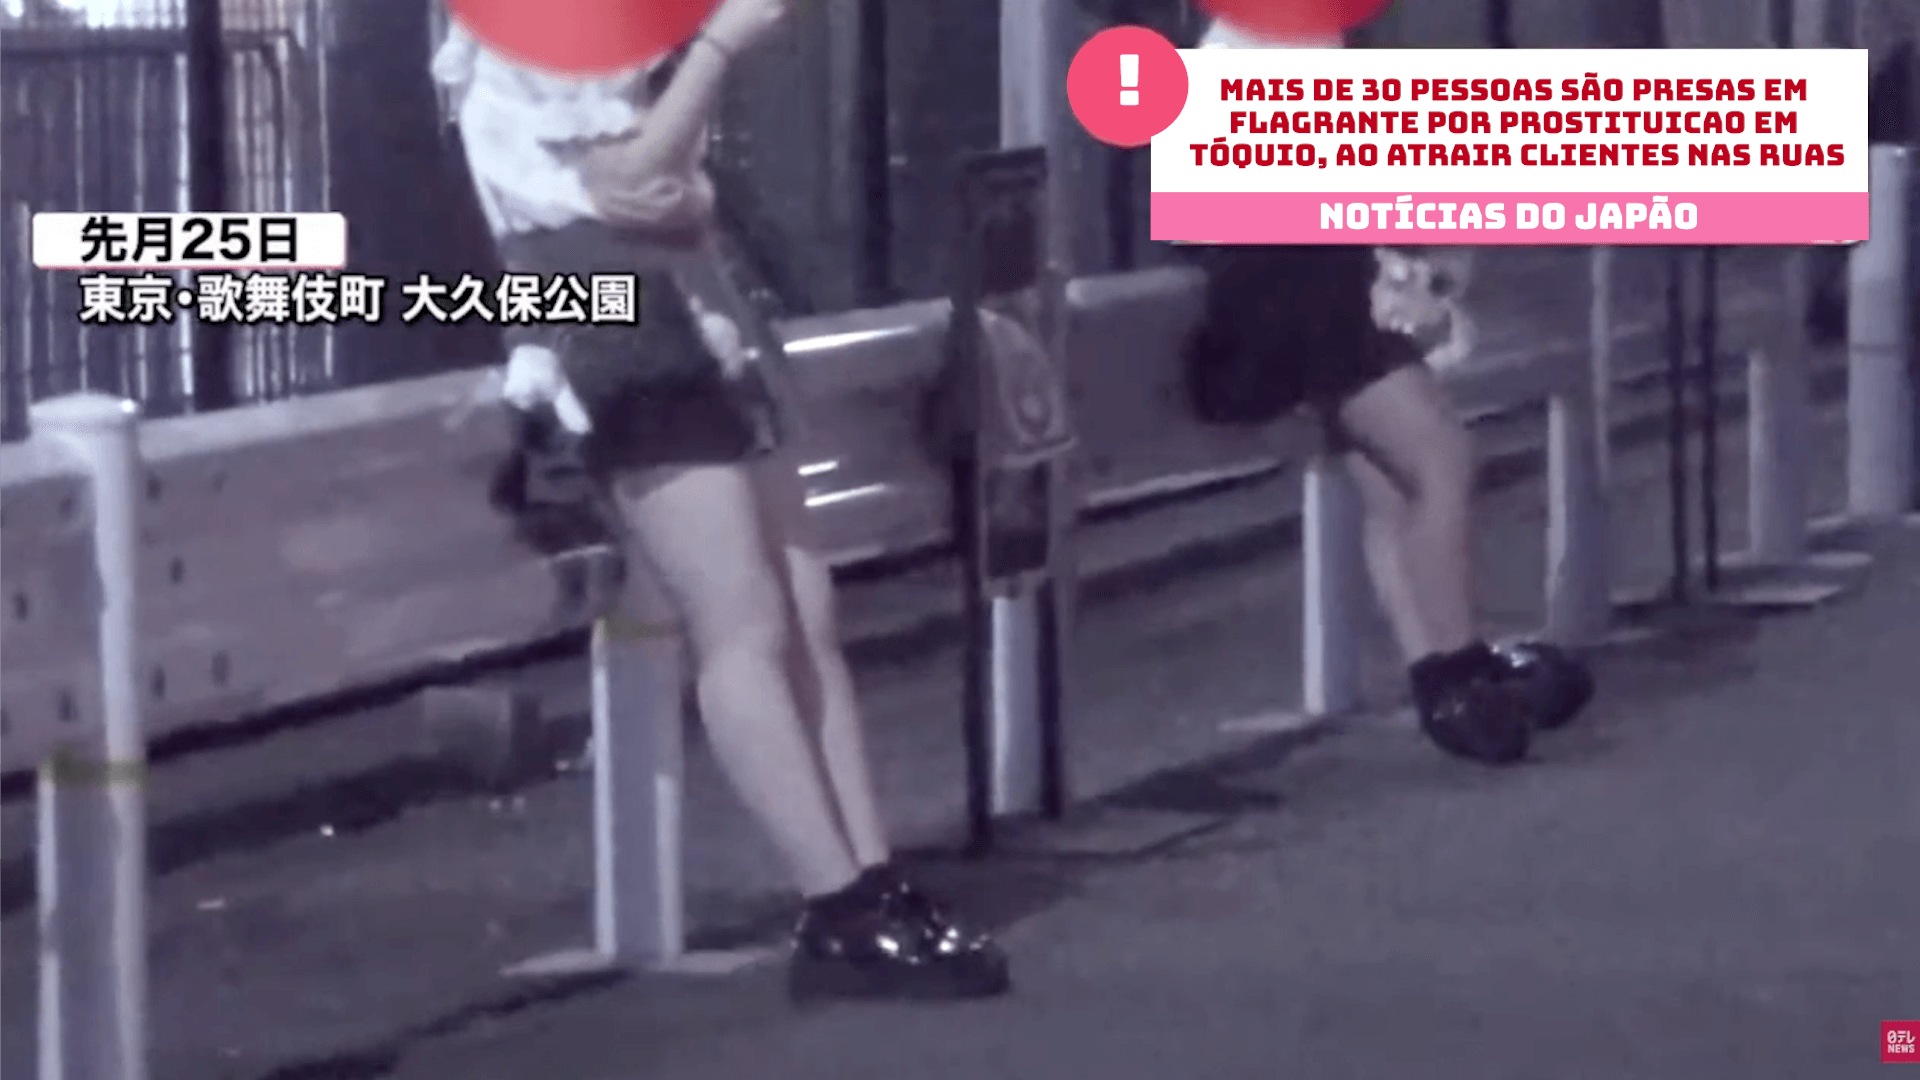 Mais de 30 pessoas são presas em flagrante por prostituição em Tóquio, ao atrair clientes nas ruas 